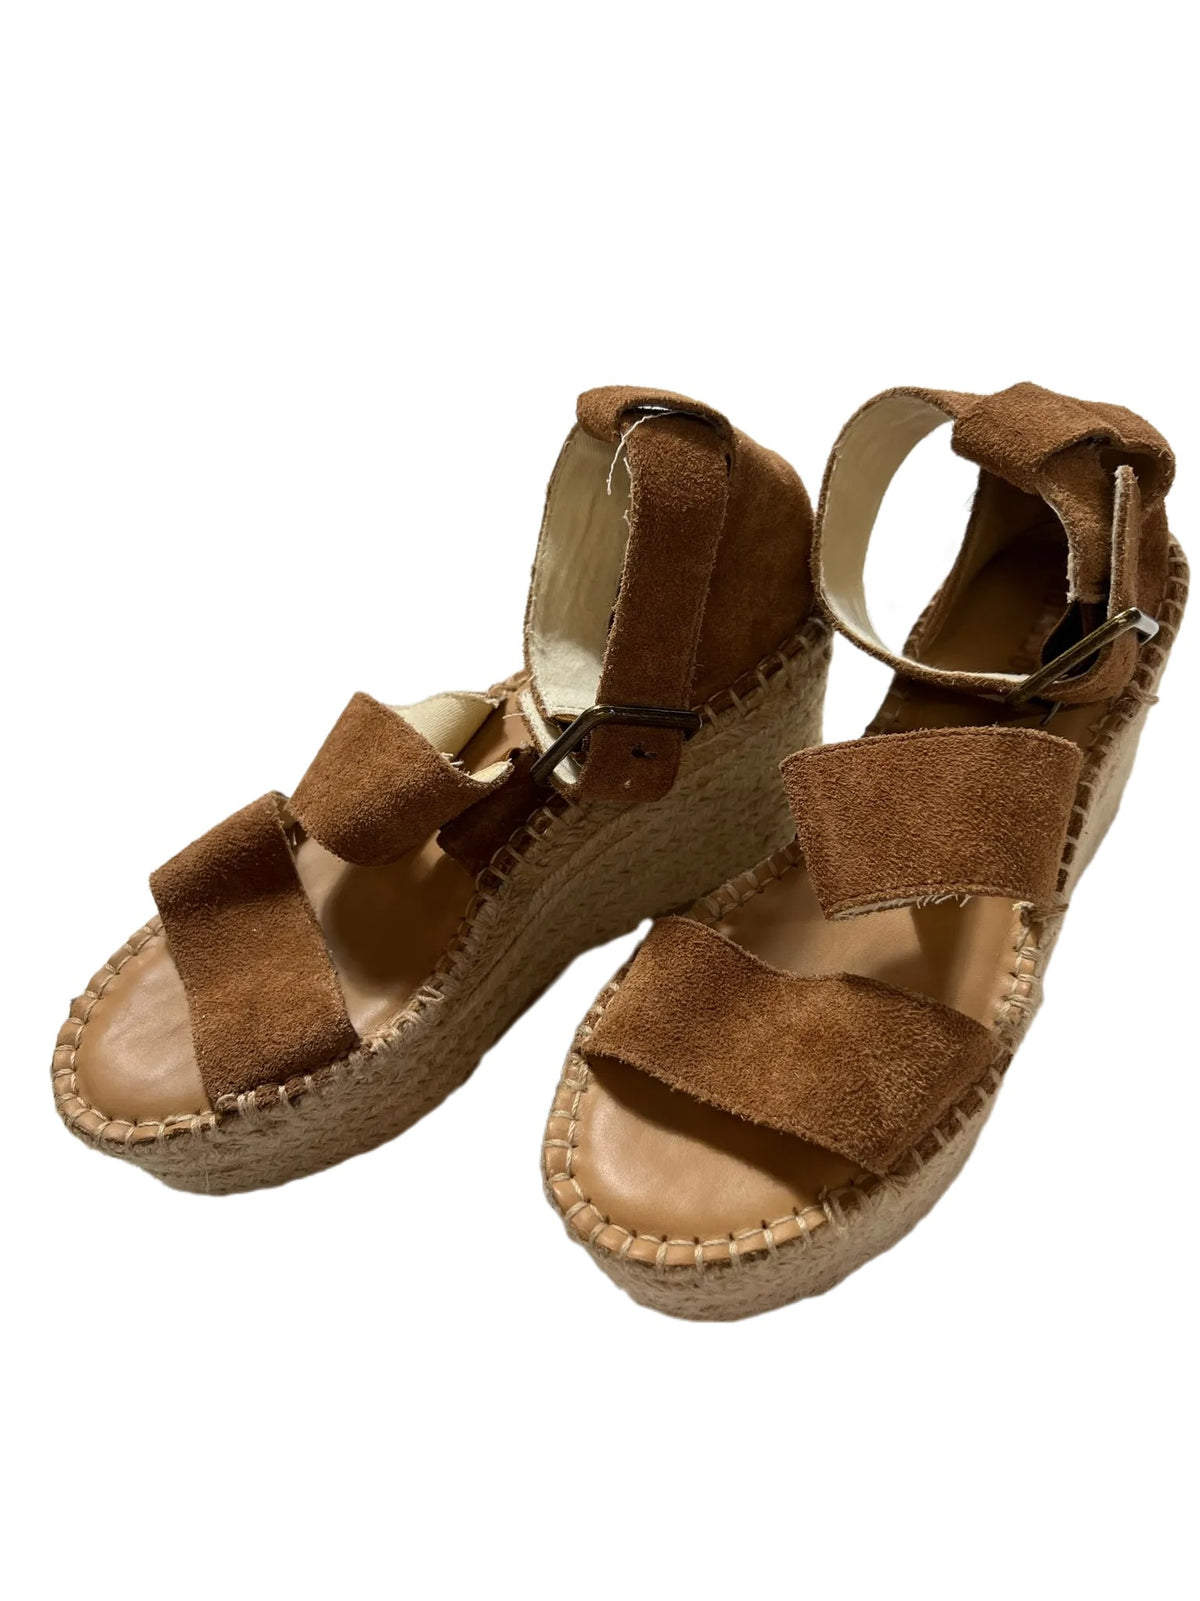 Soludos- Brown Platform Sandals